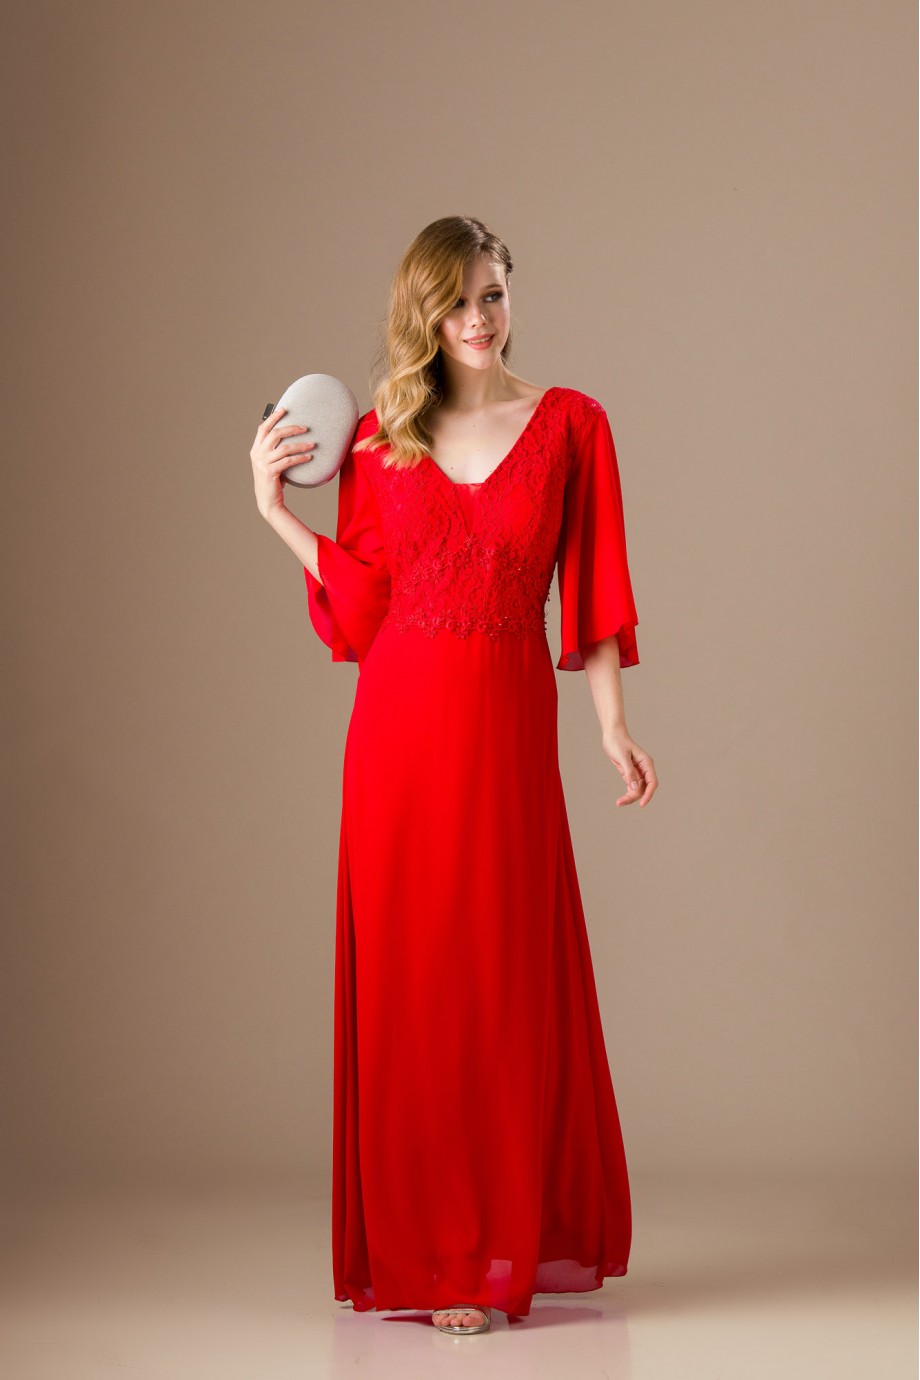 Μακρύ κόκκινο φόρεμα με ιδιαίτερα μανίκια